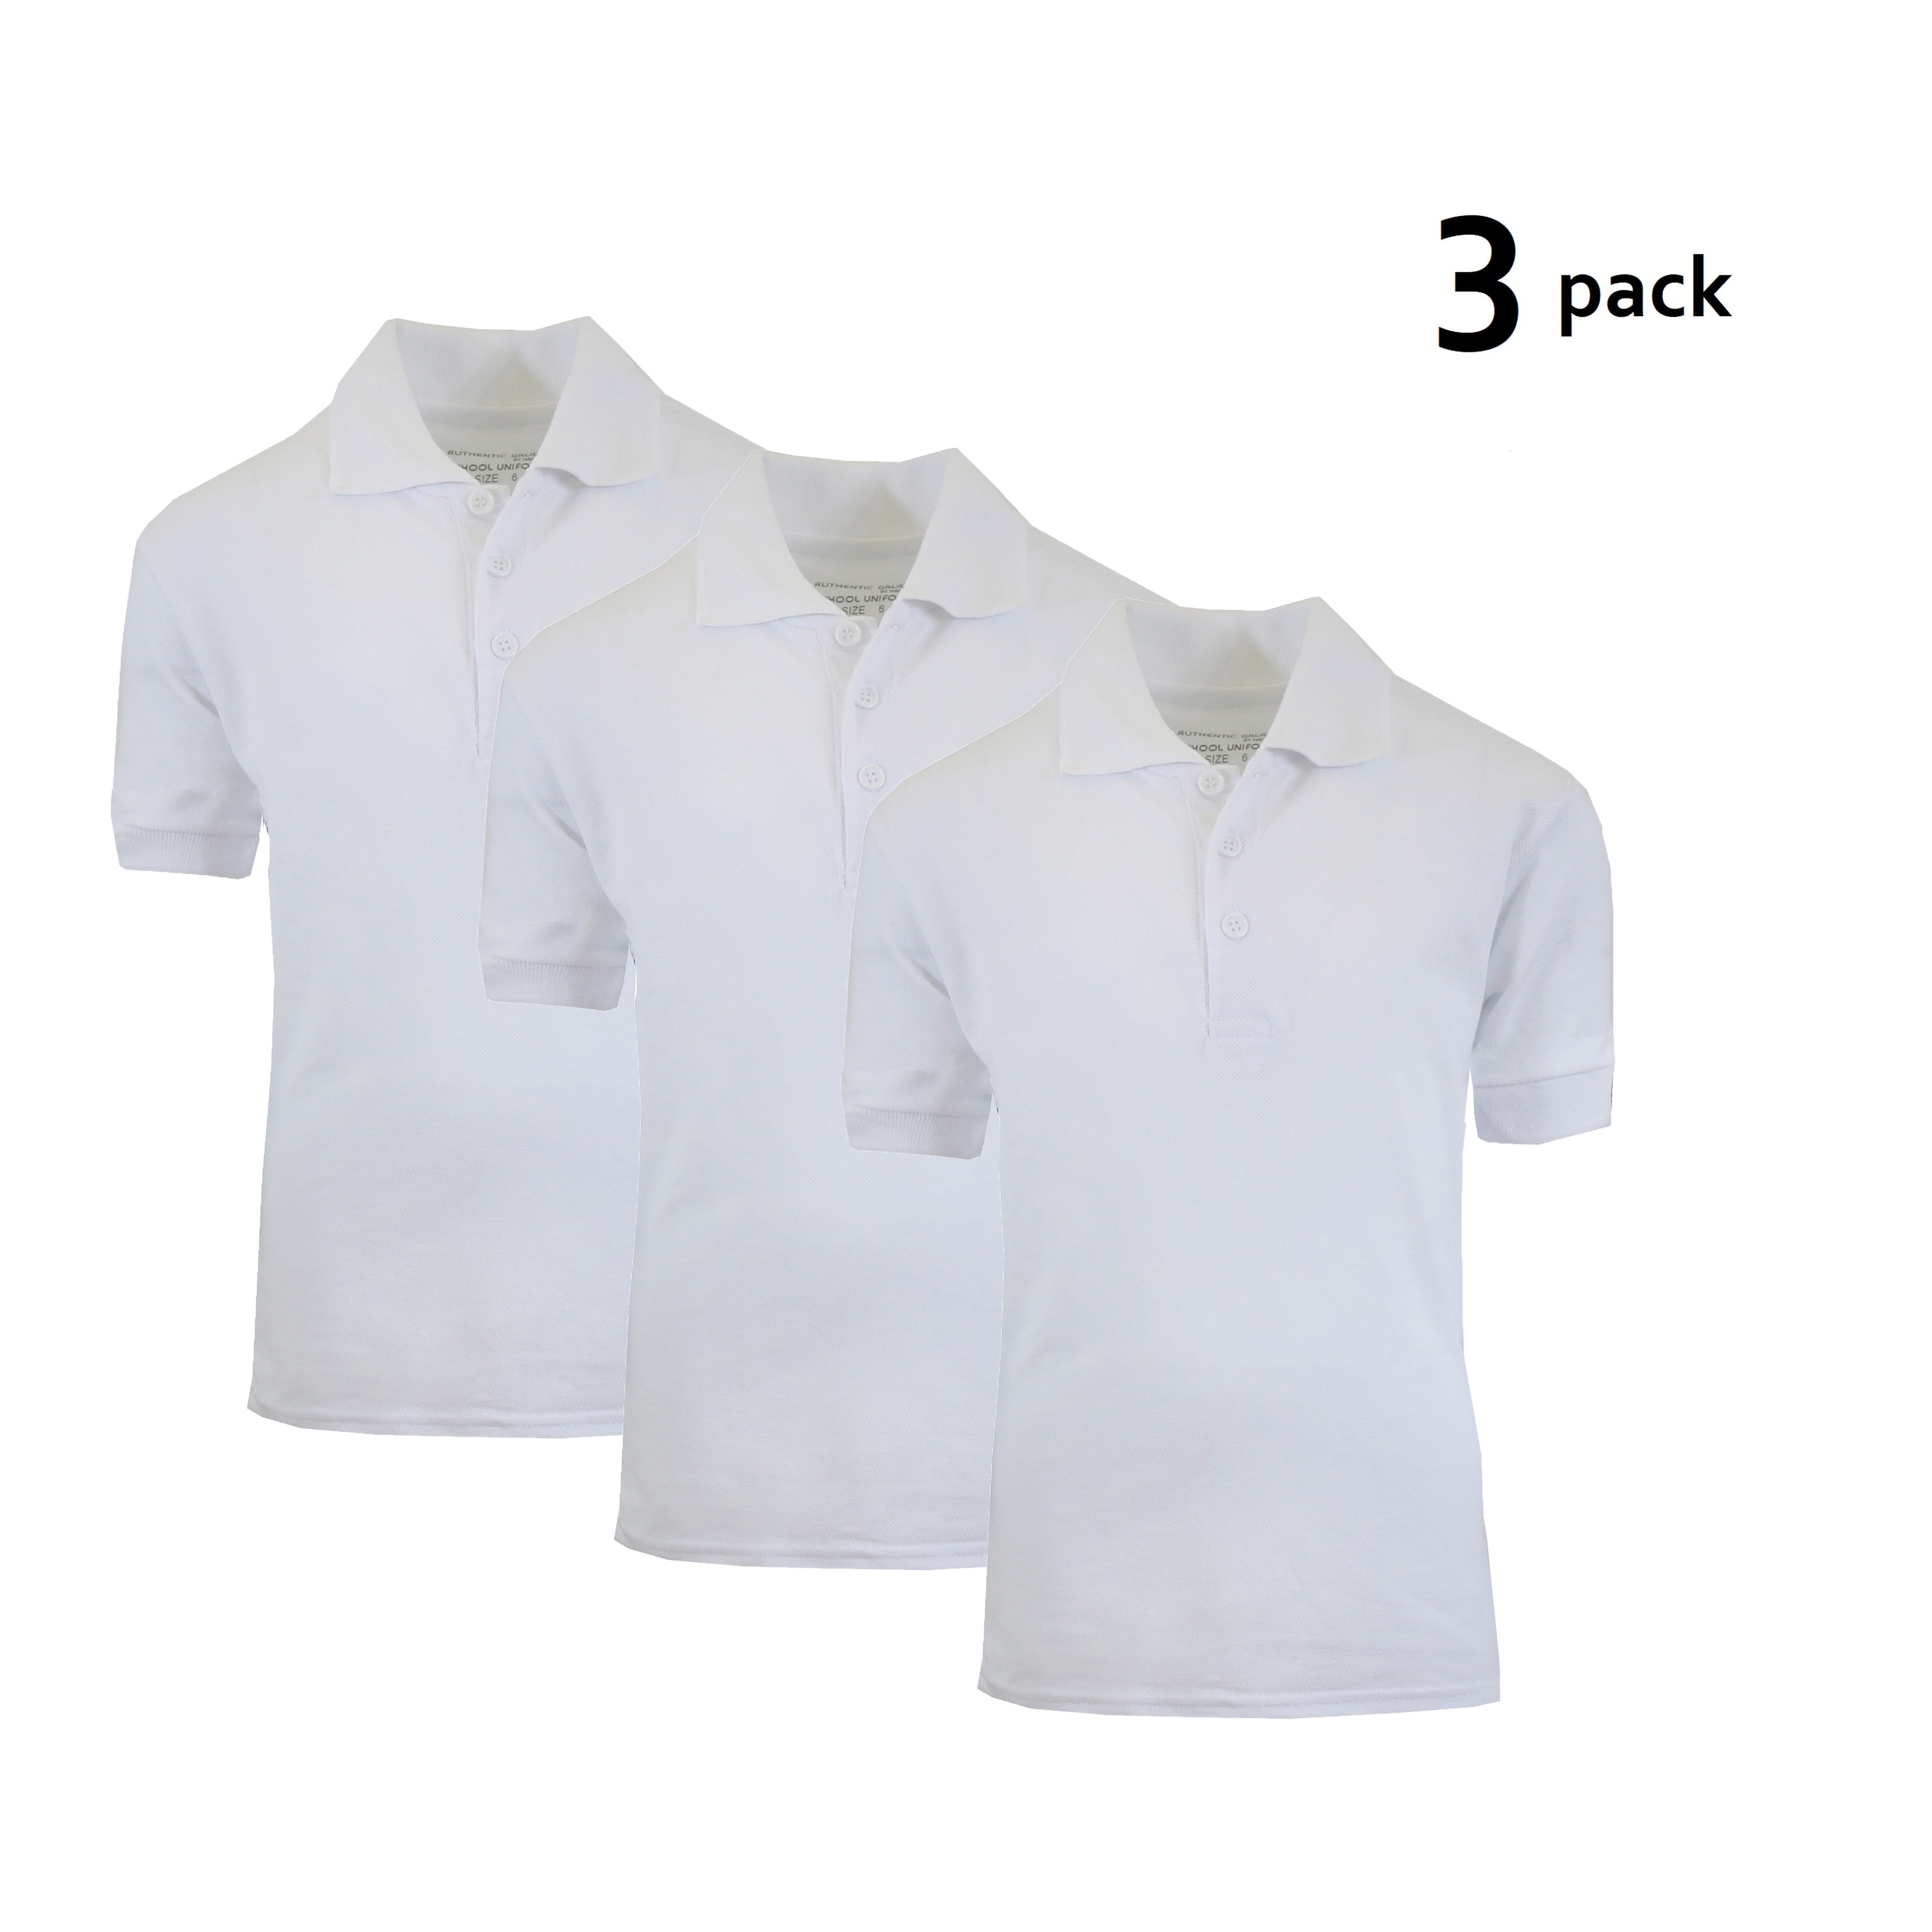 uniform polo shirts